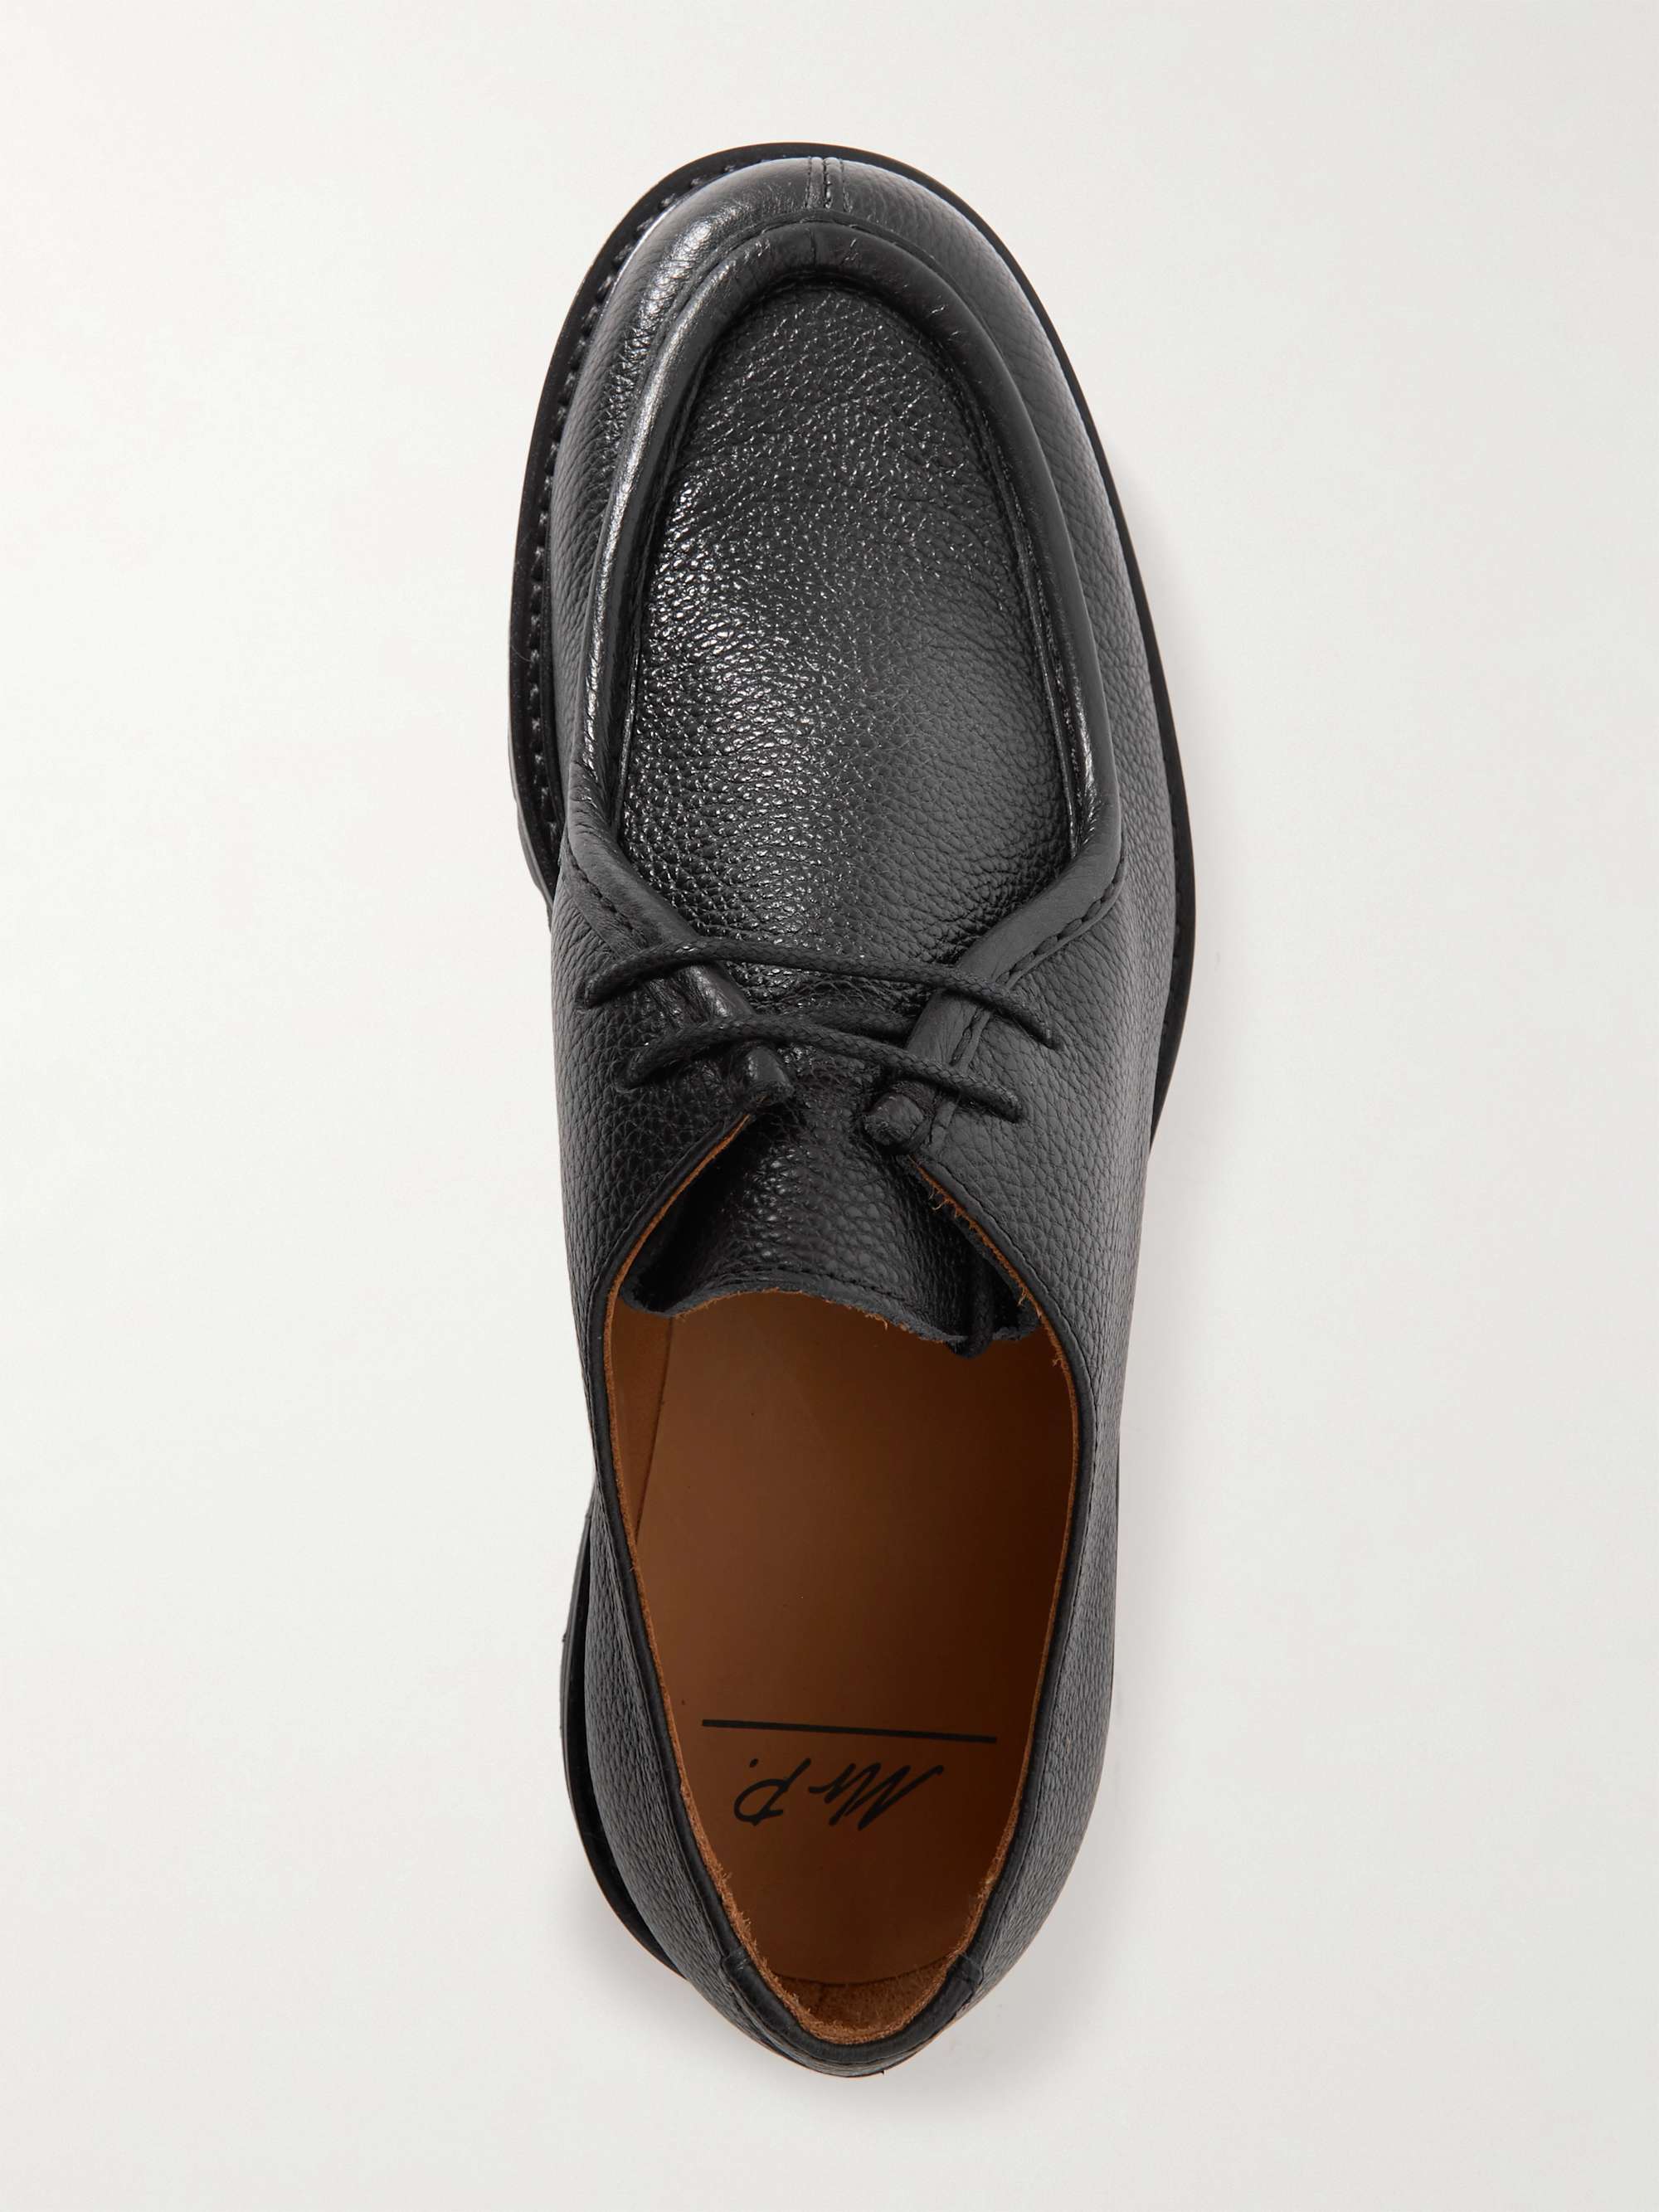 Mr P. Jacques Men's Leather Derby Shoes